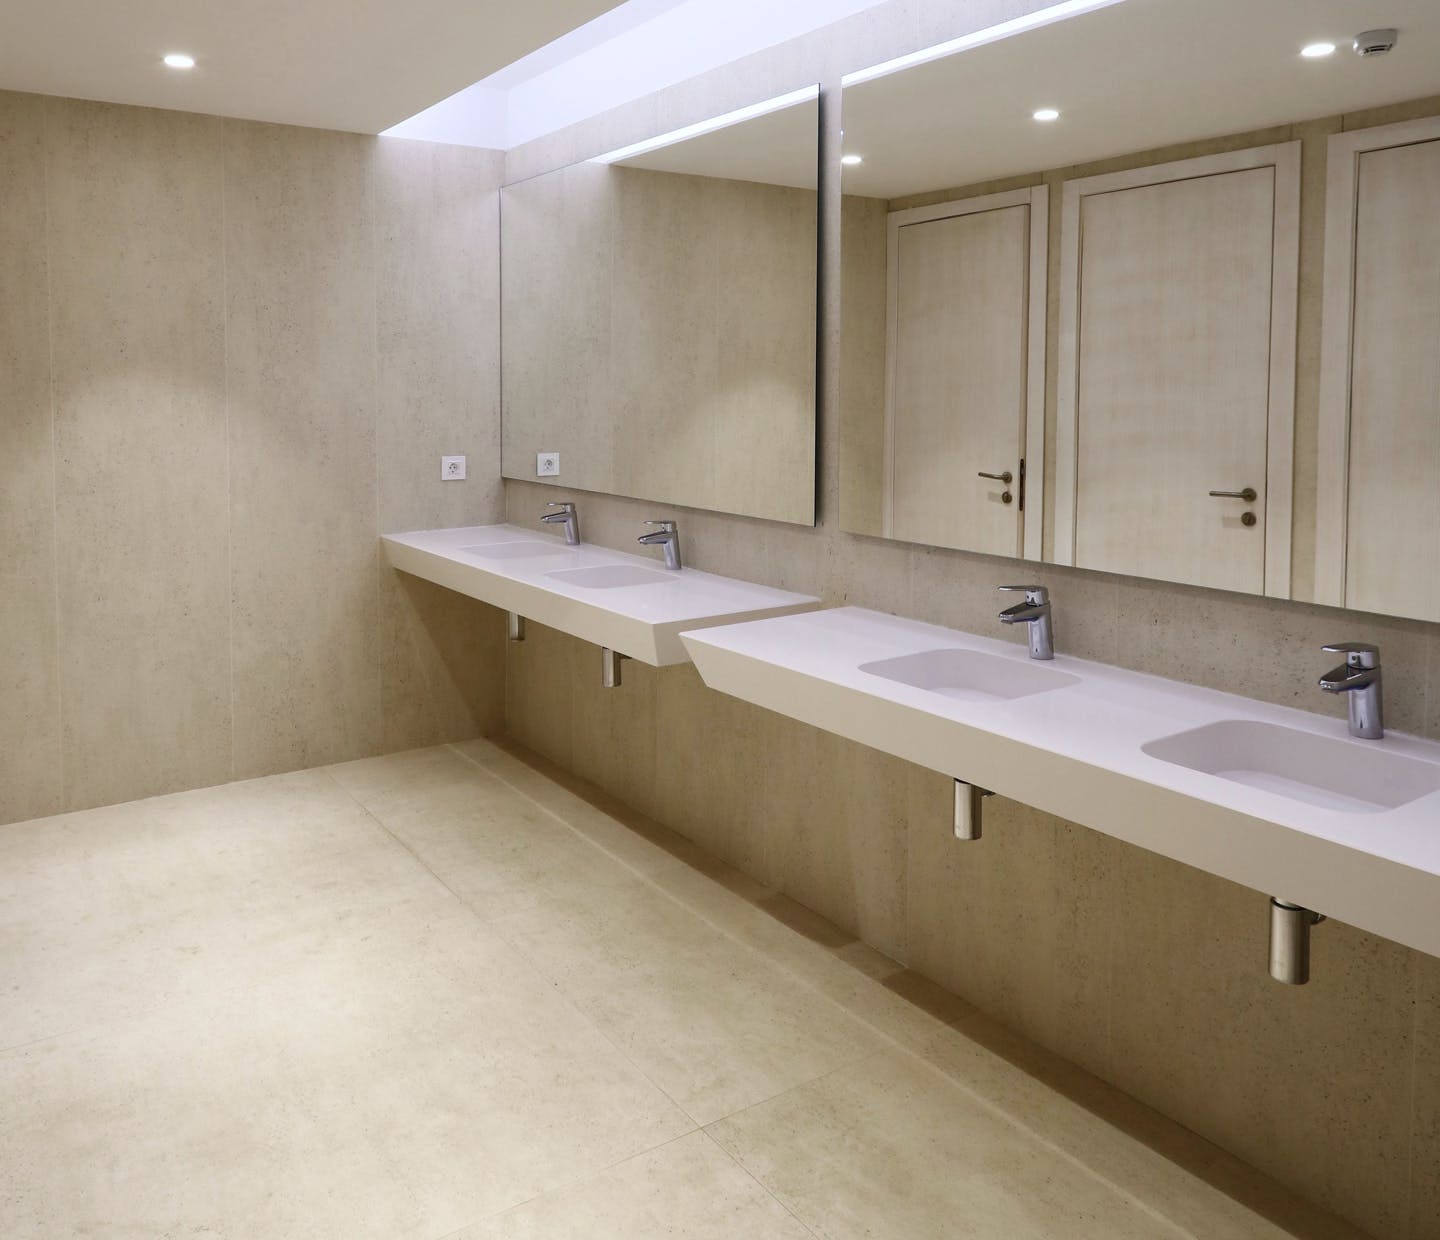 Image 19 of Soluciones Integrales in Designer bathrooms with unique materials - Cosentino